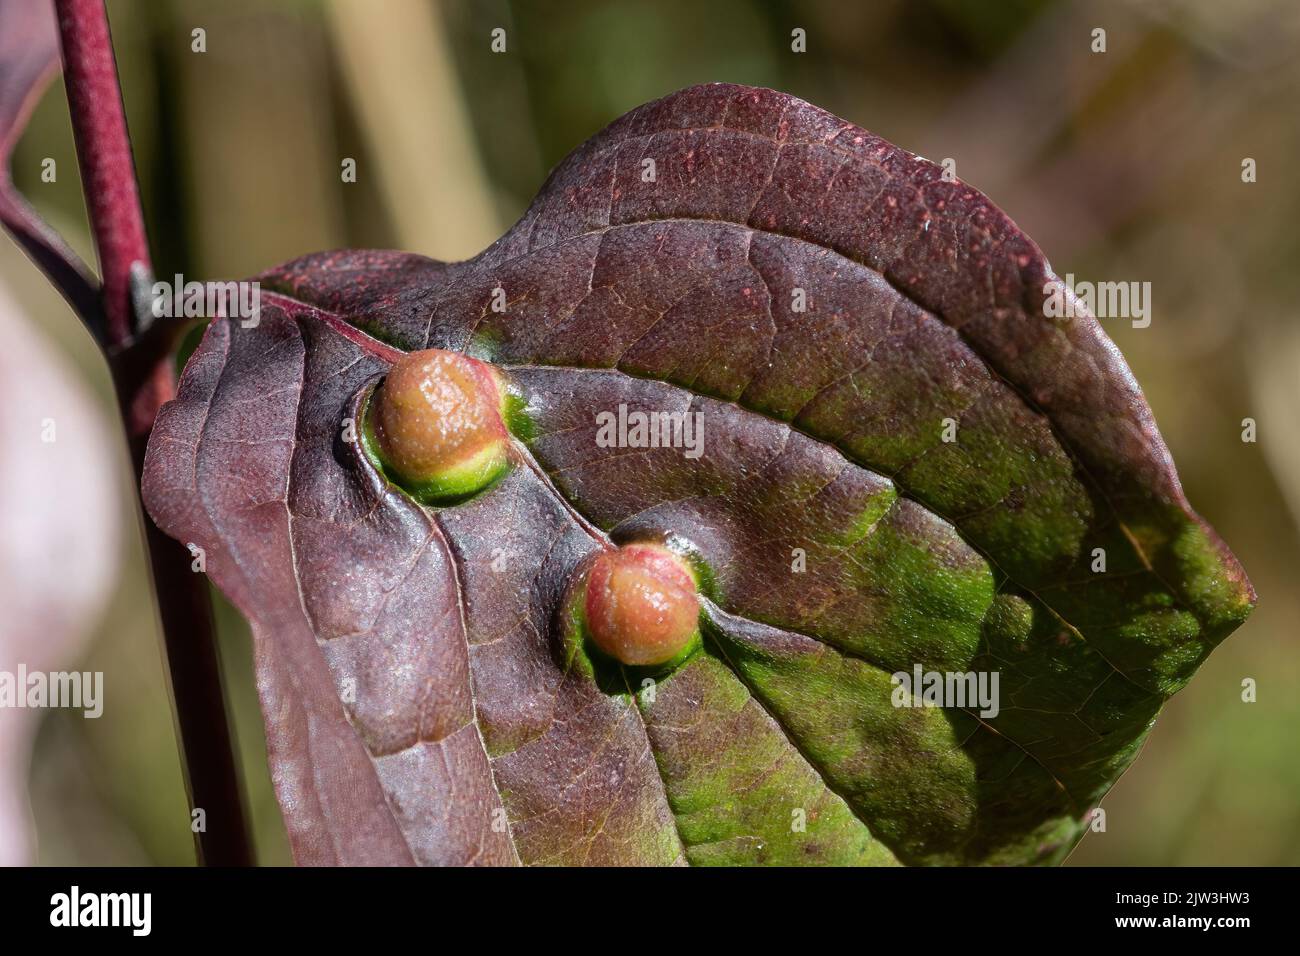 Des galettes sur les feuilles de bois de chien (Cornus sanguinea) causées par les larves du mousde de rivet de bois de chien Craneiobia corni, Hampshire, Angleterre, Royaume-Uni Banque D'Images